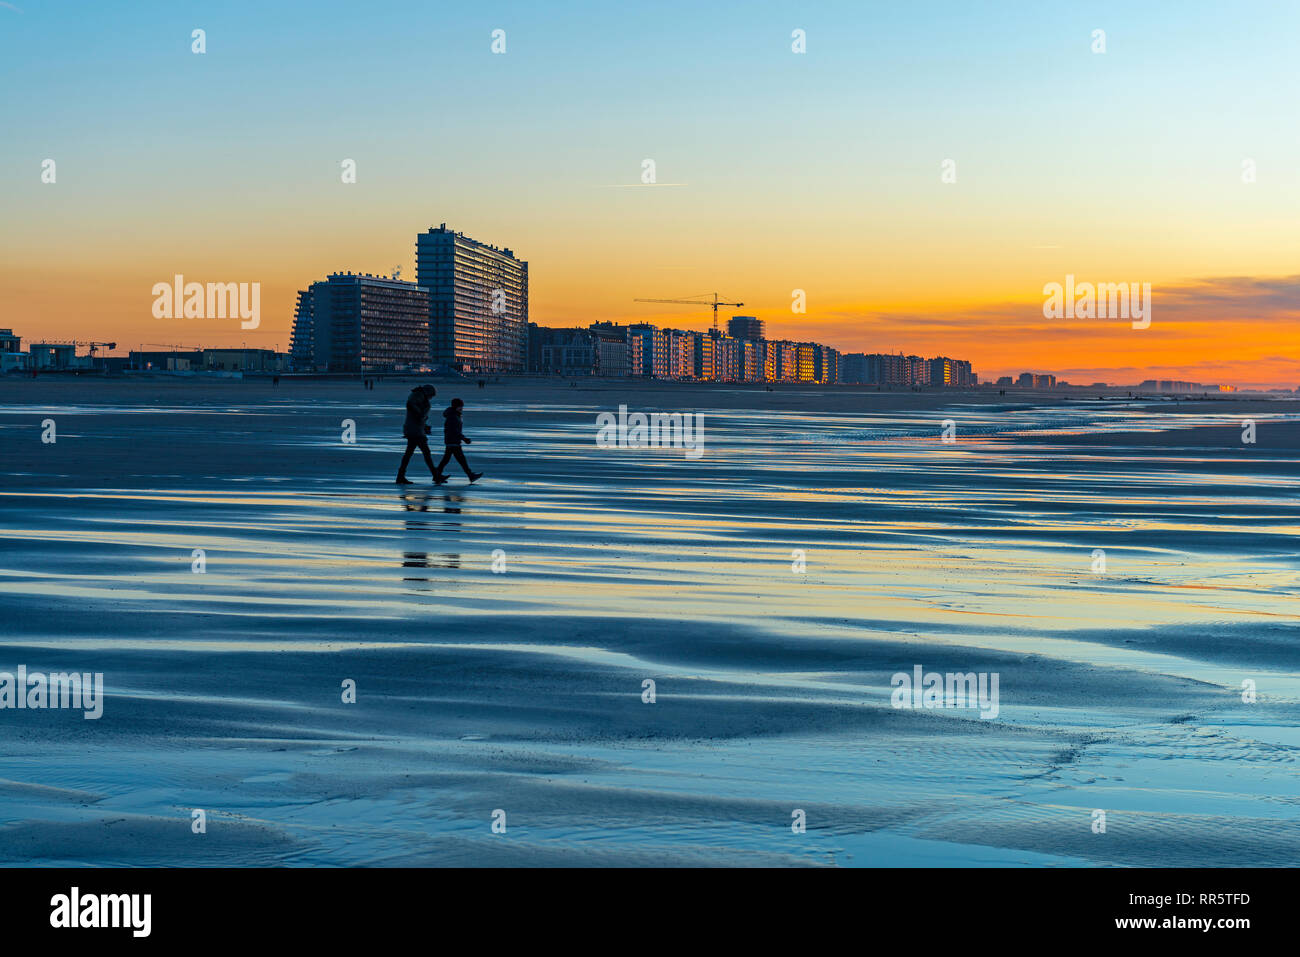 La reflexión de dos siluetas de personas en el norte de la playa de Mar de Ostende con paisaje urbano en el fondo al atardecer, en el oeste de Flandes, Bélgica. Foto de stock